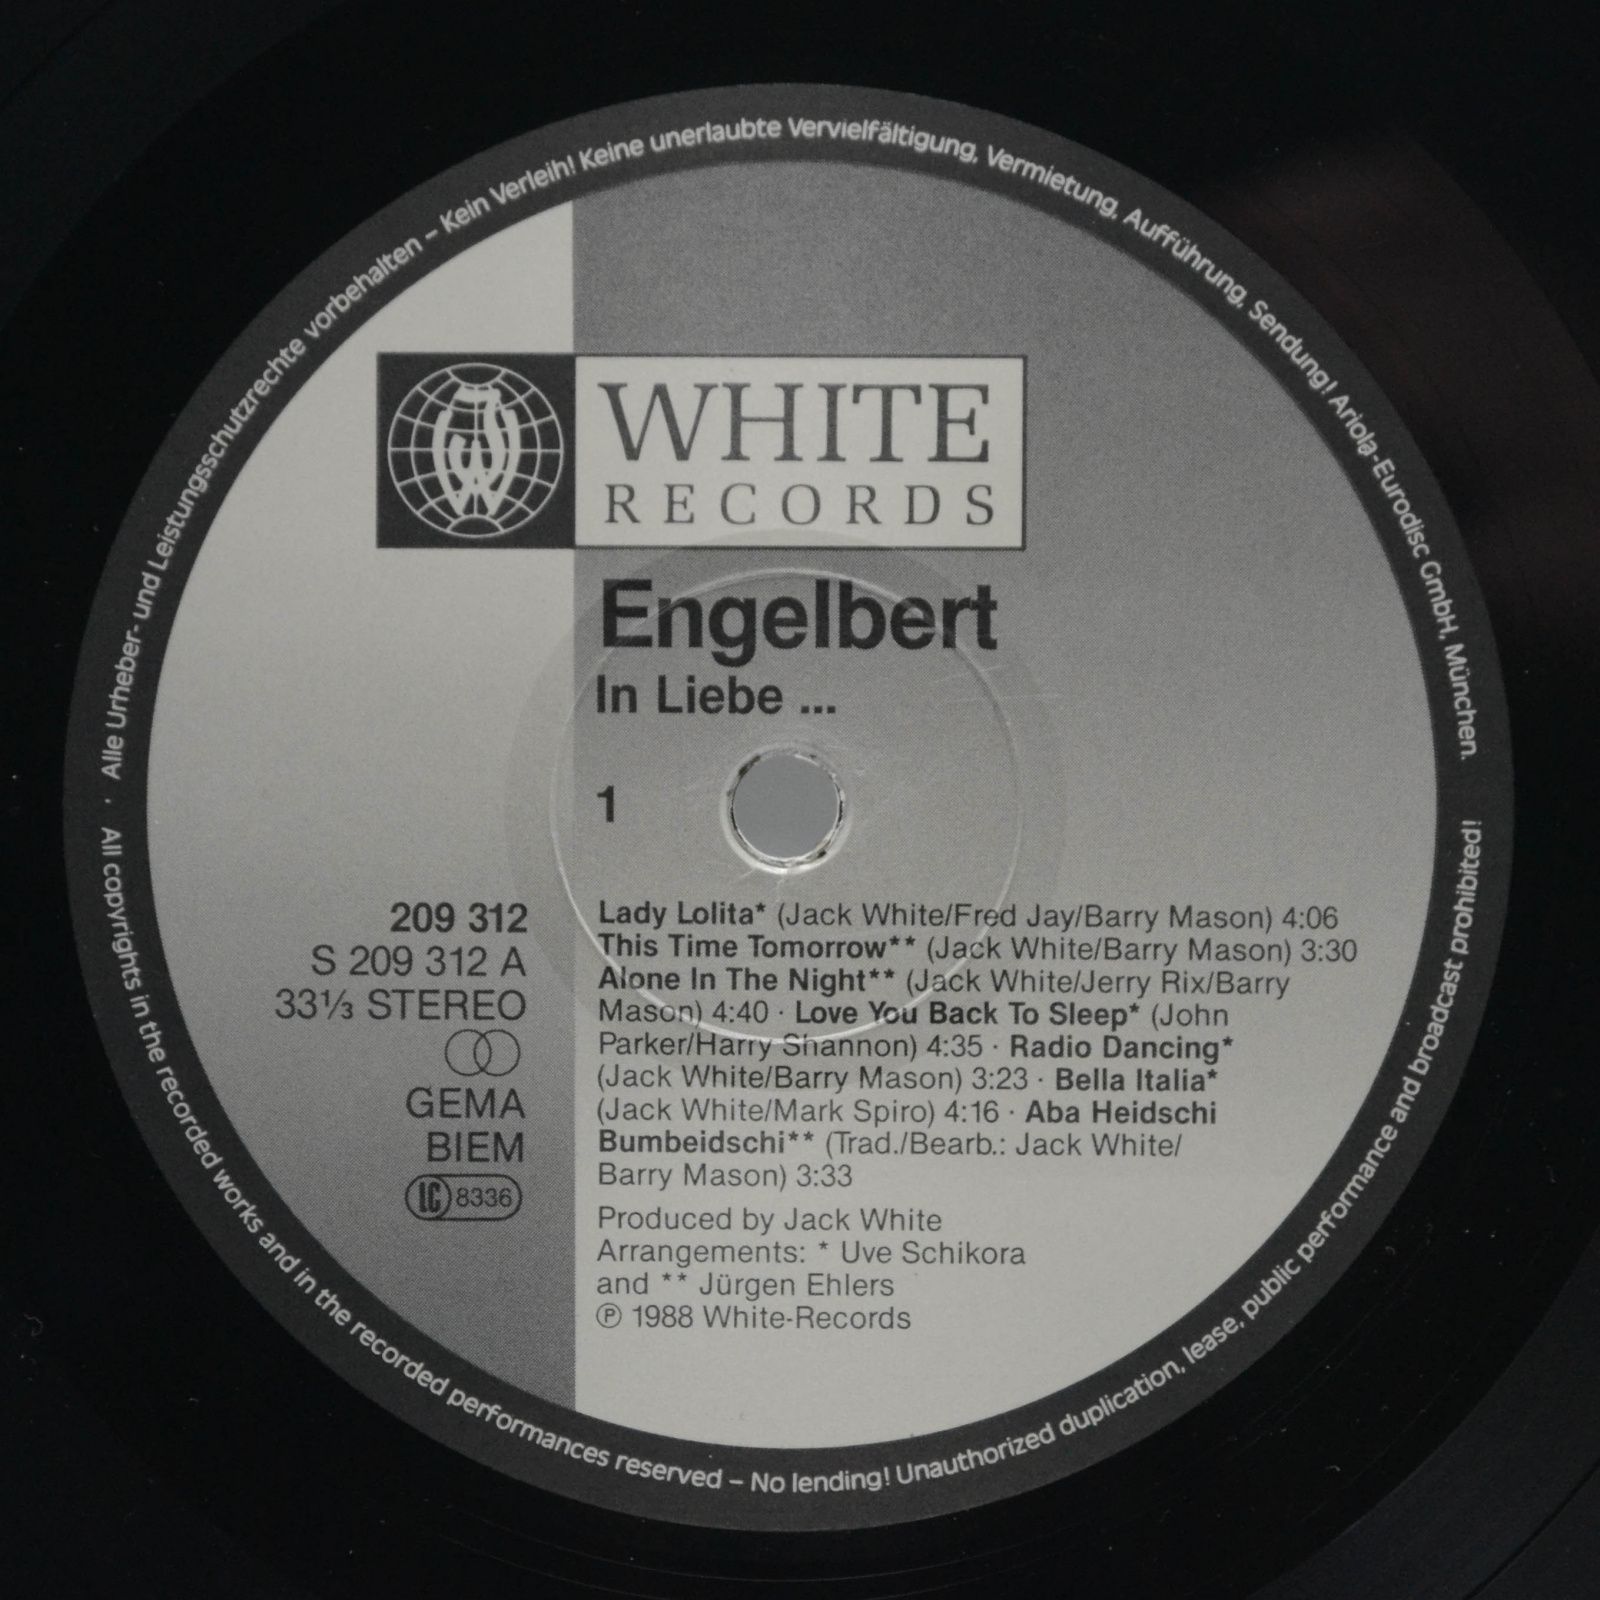 Engelbert — In Liebe, 1988